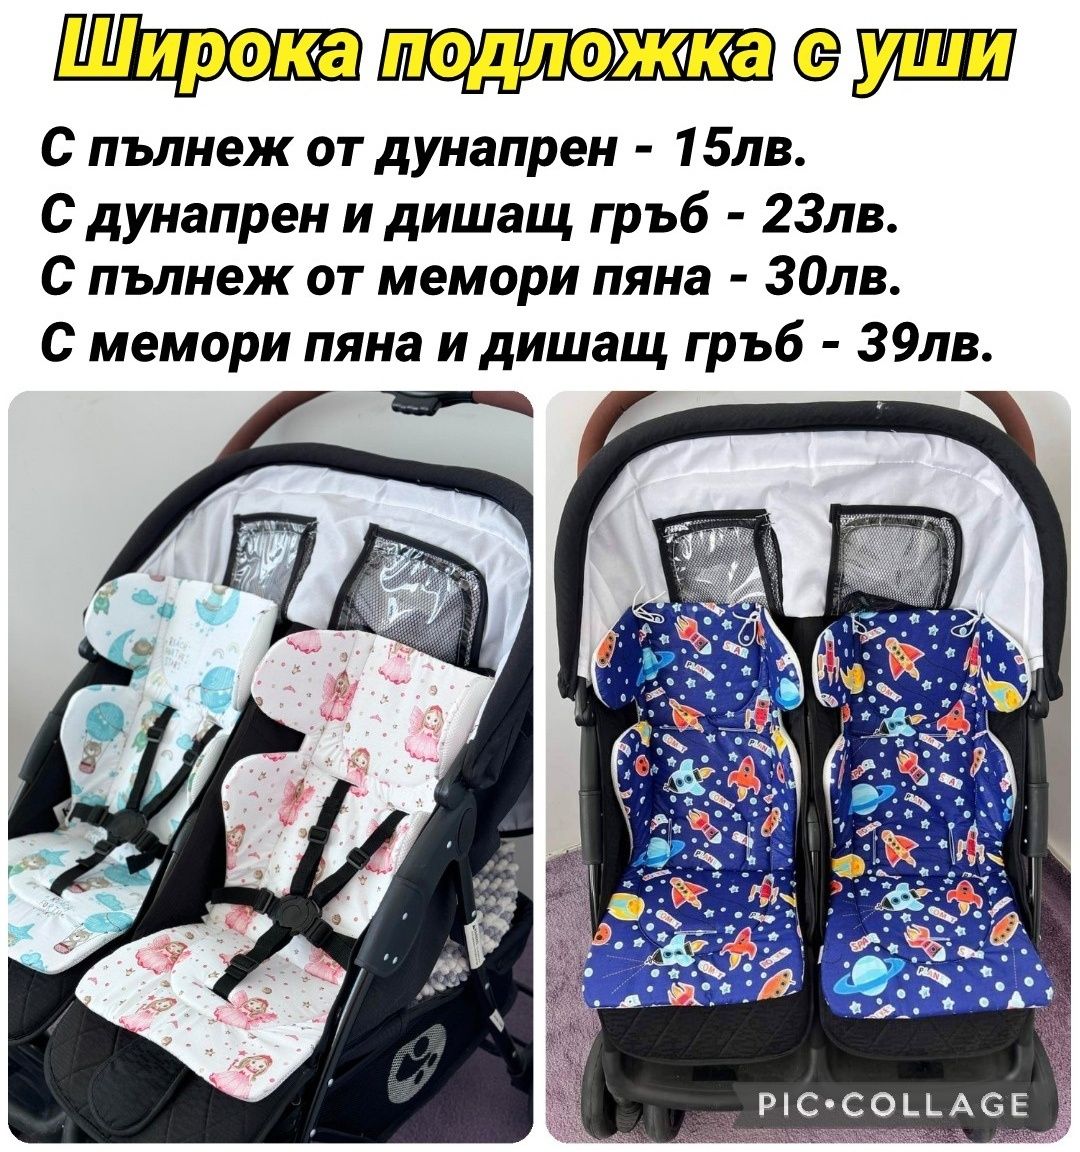 Аксесоари за количка за близнаци - комарник,подложки и сенници